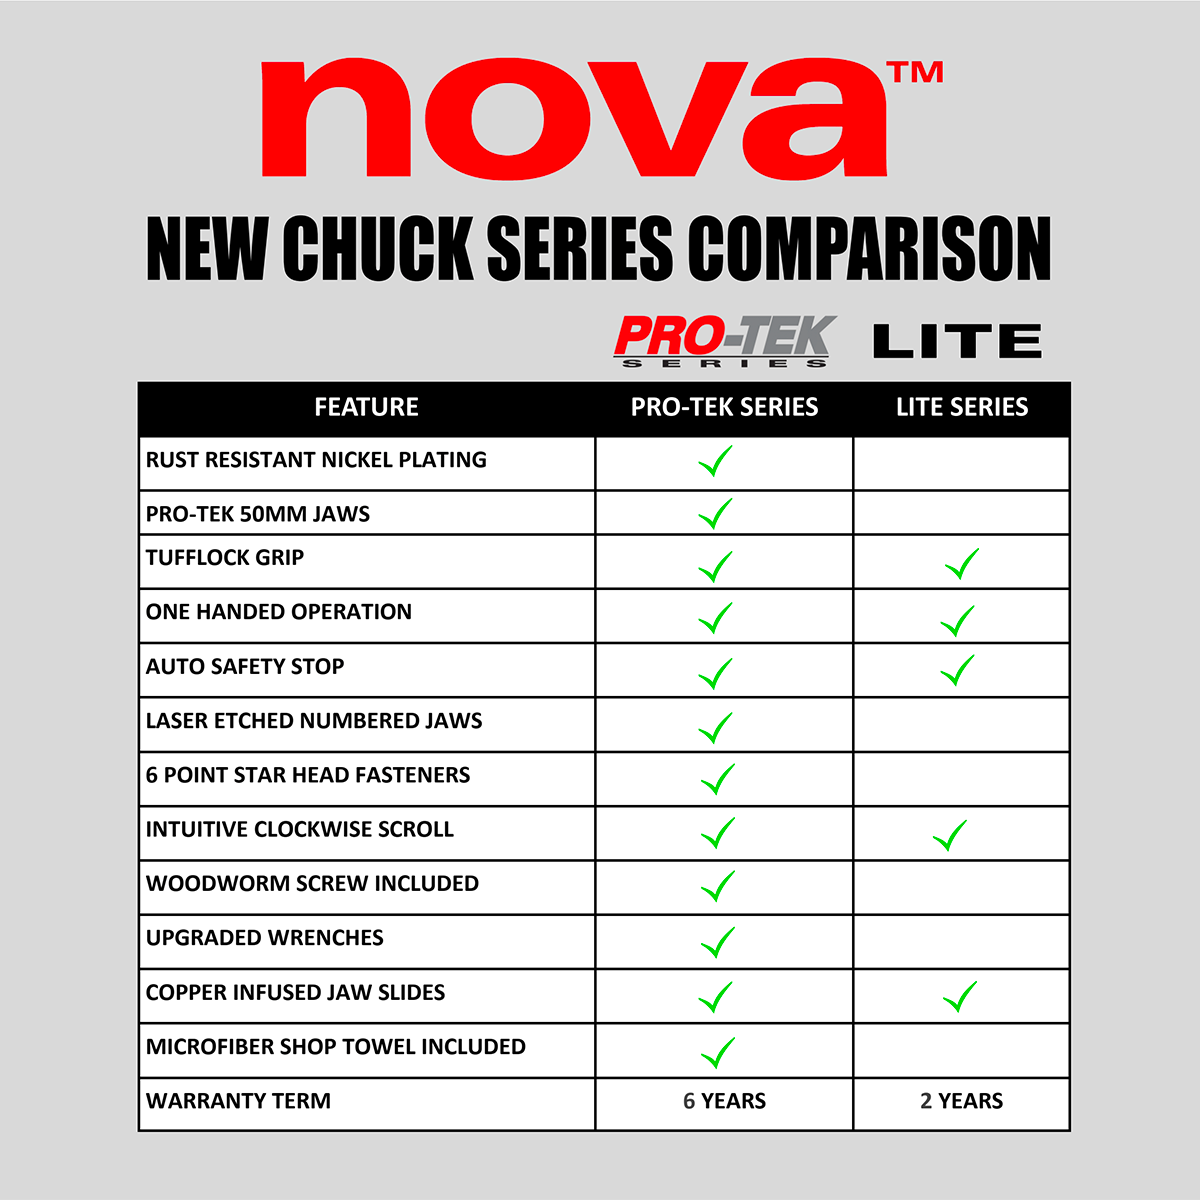 New Chuck Series Comparison